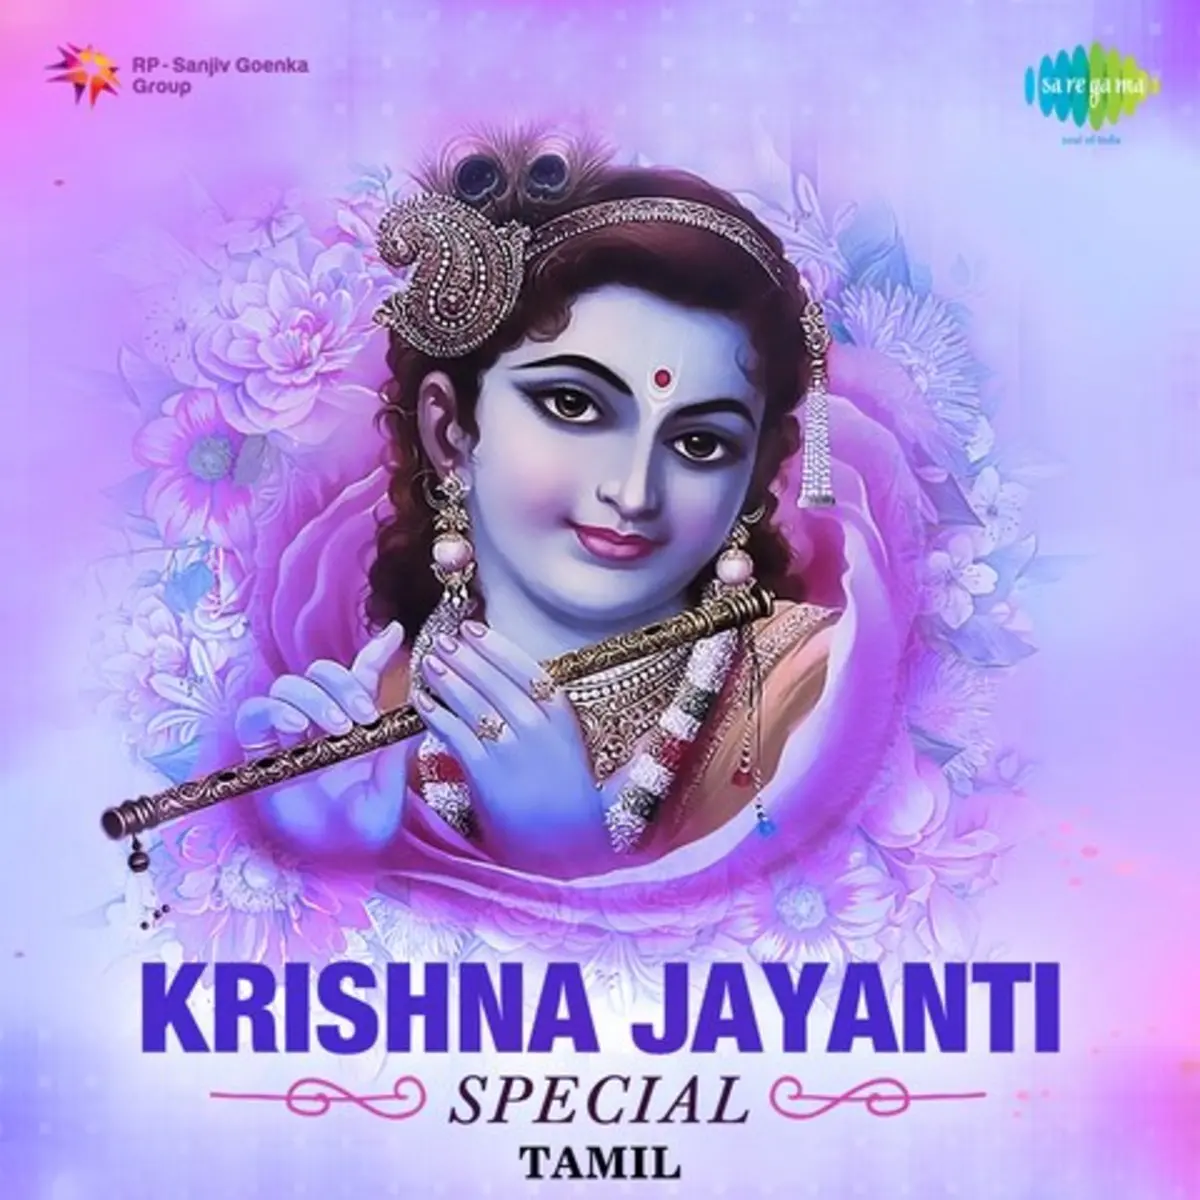 Krishna Jayanti Special Tamil Songs Download Krishna Jayanti Special Tamil Mp3 Tamil Songs Online Free On Gaana Com